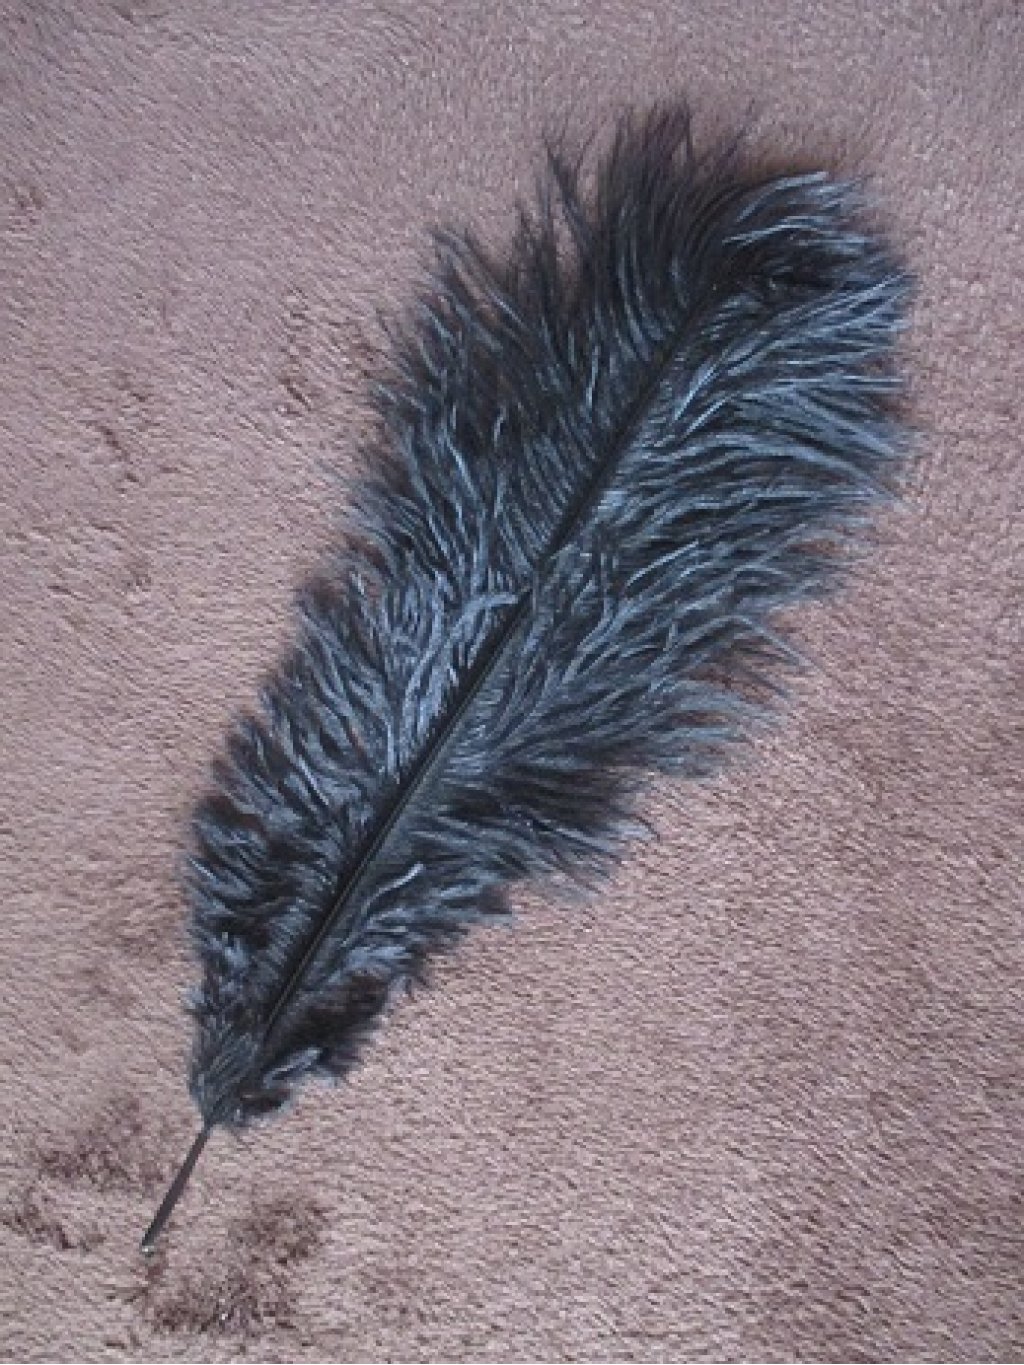 Pštrosí peří černé barvené 30 - 35 cm